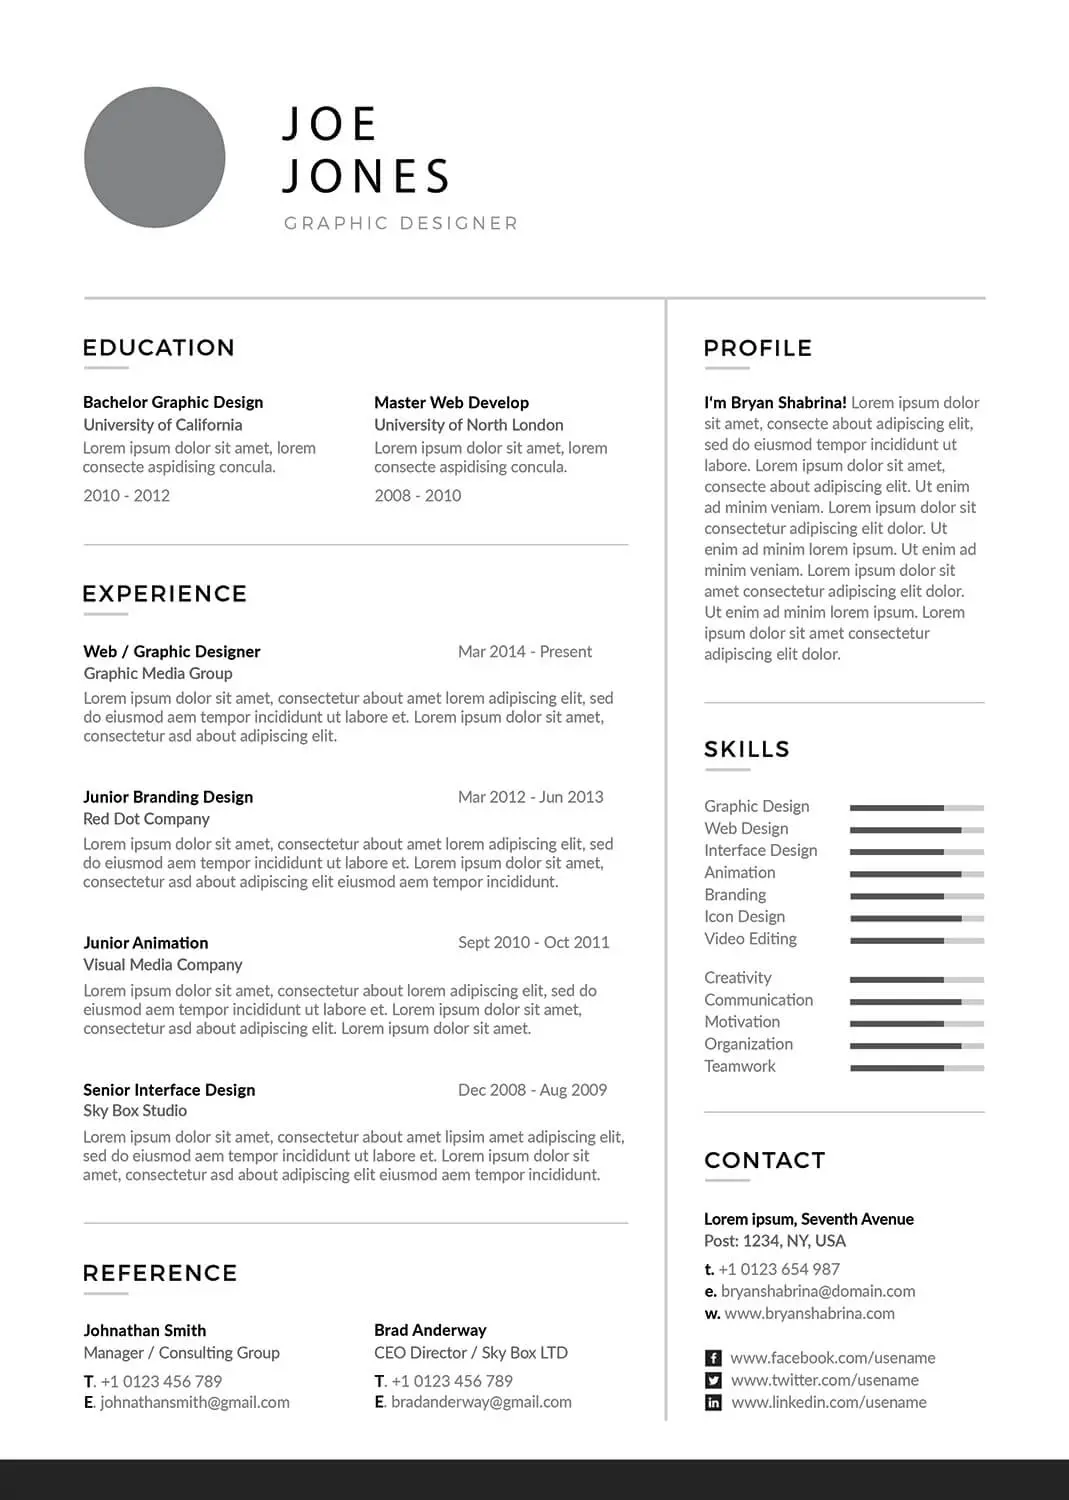 brand-ambassador-resume